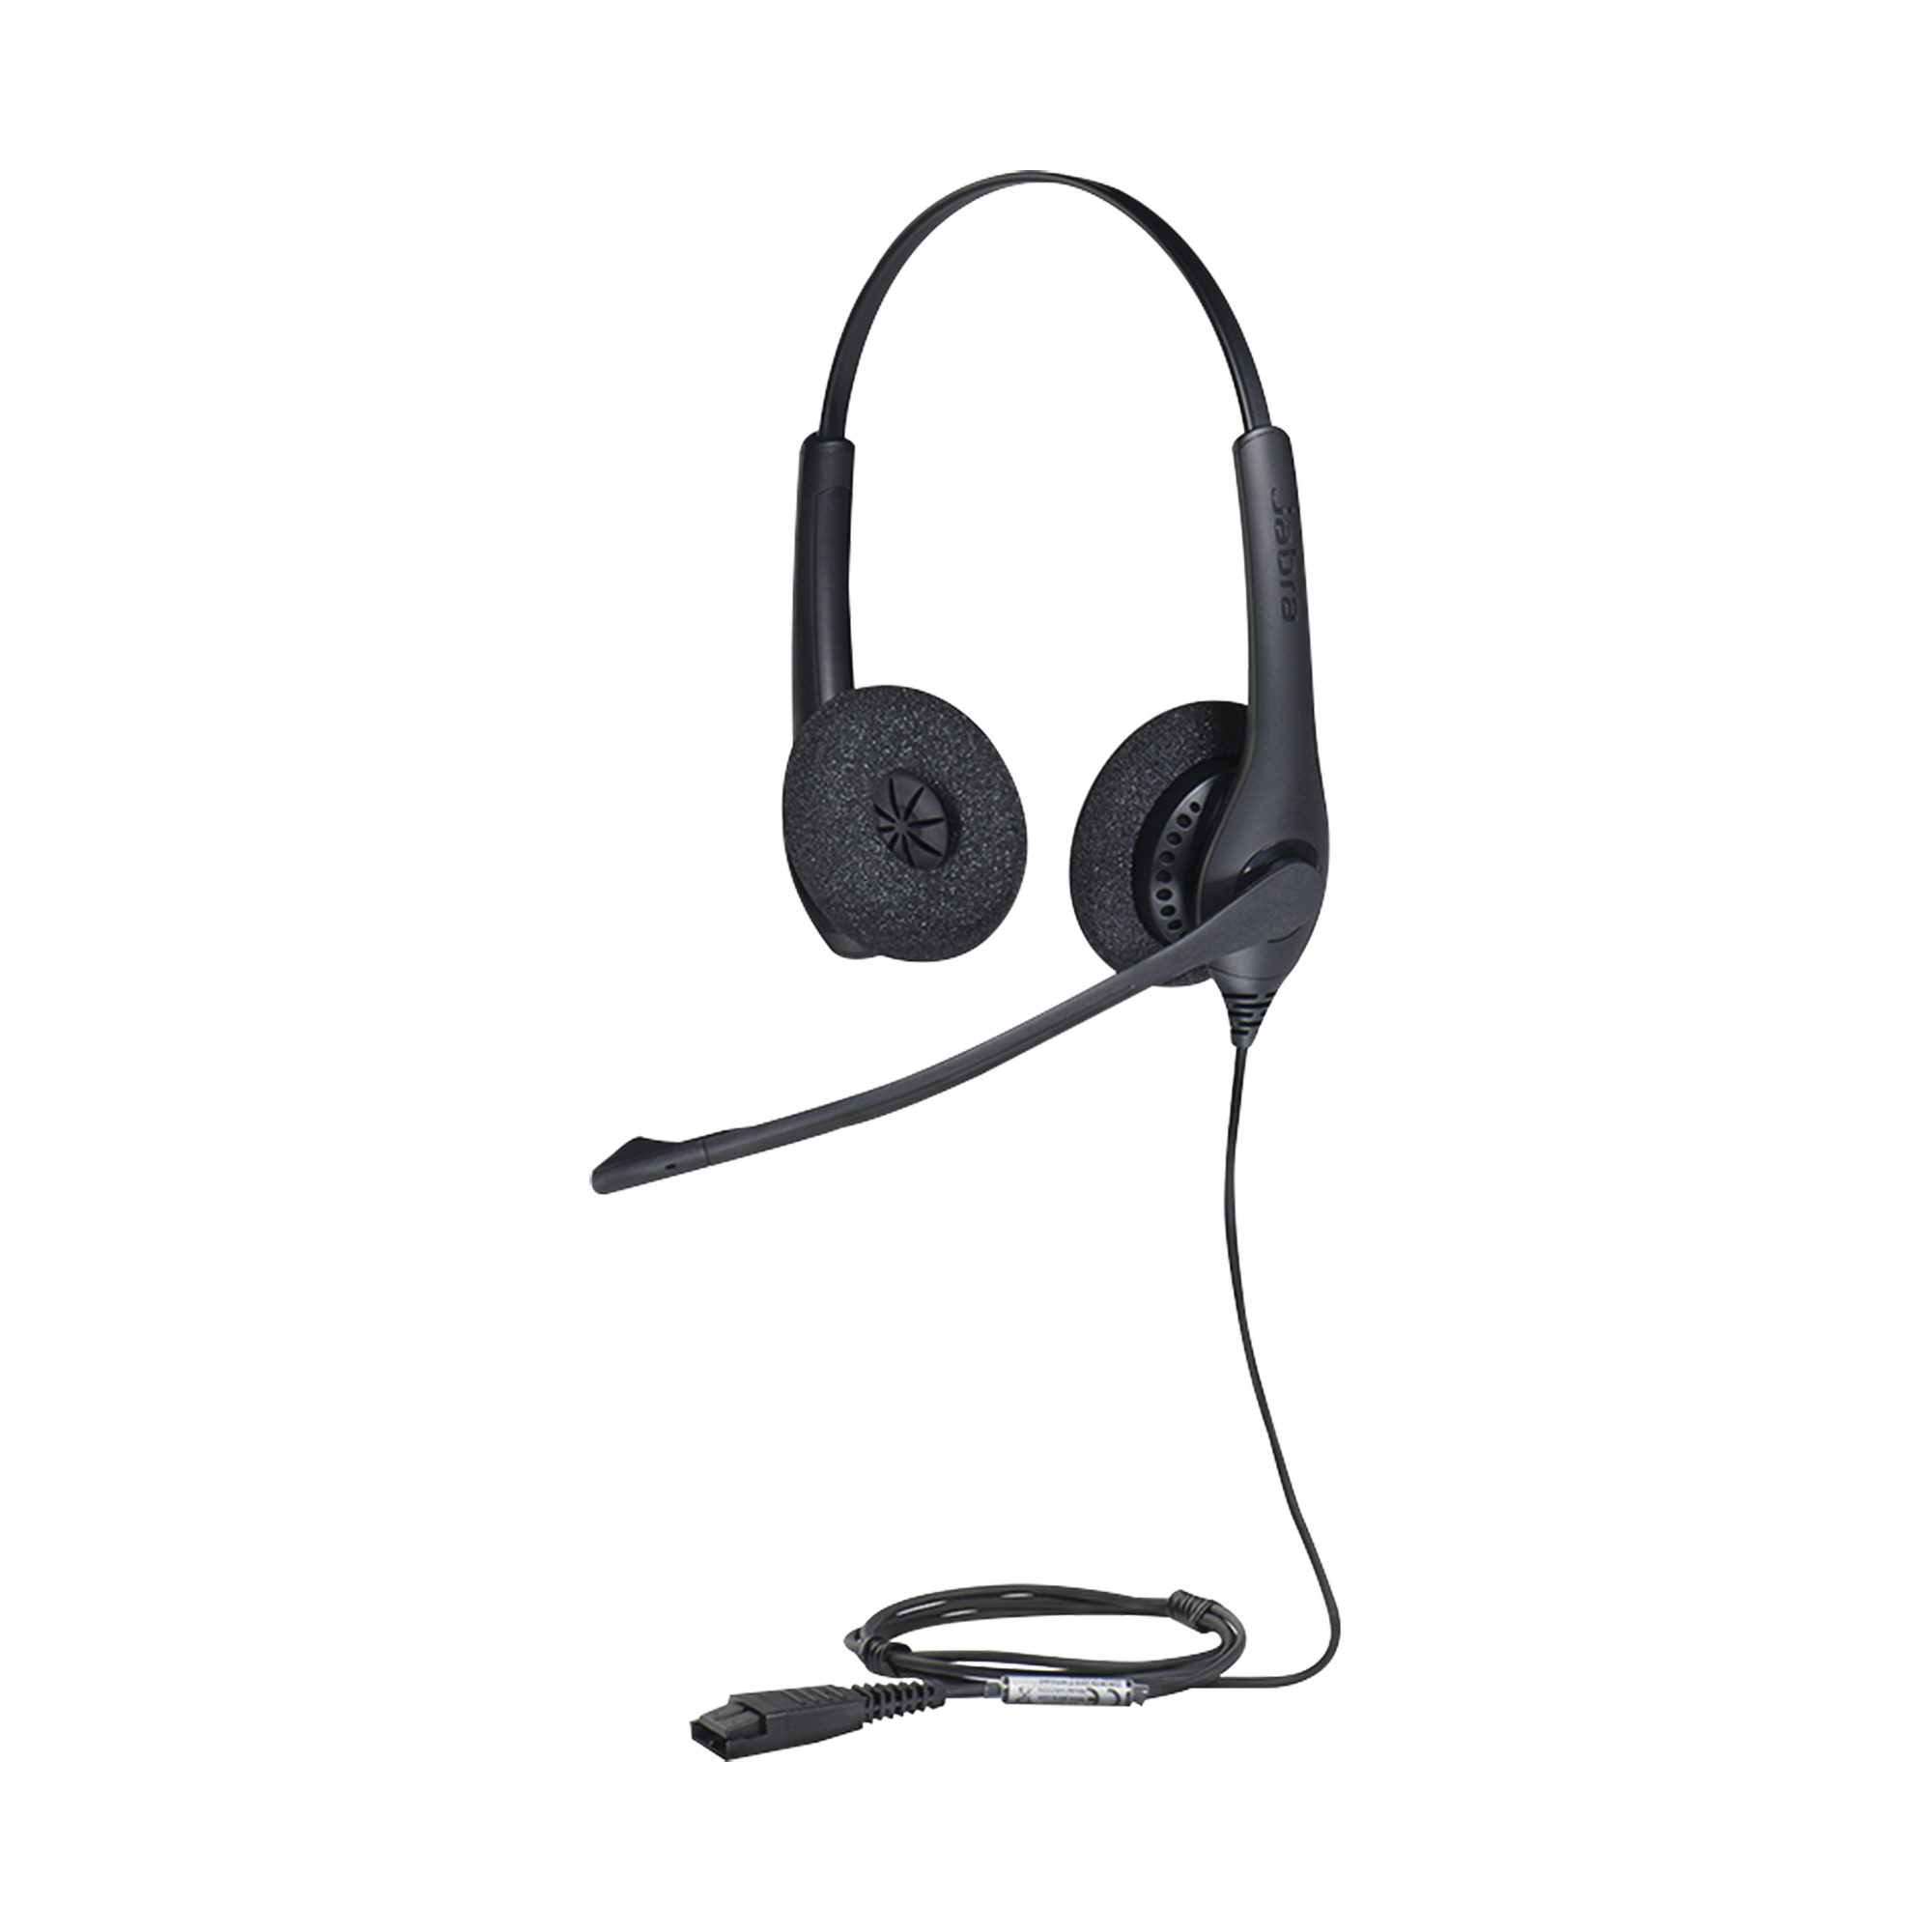 Jabra Biz 1500 Duo, auricular profesional con cancelación de ruido, ideal para contact center con conexión QD (1519-0157)